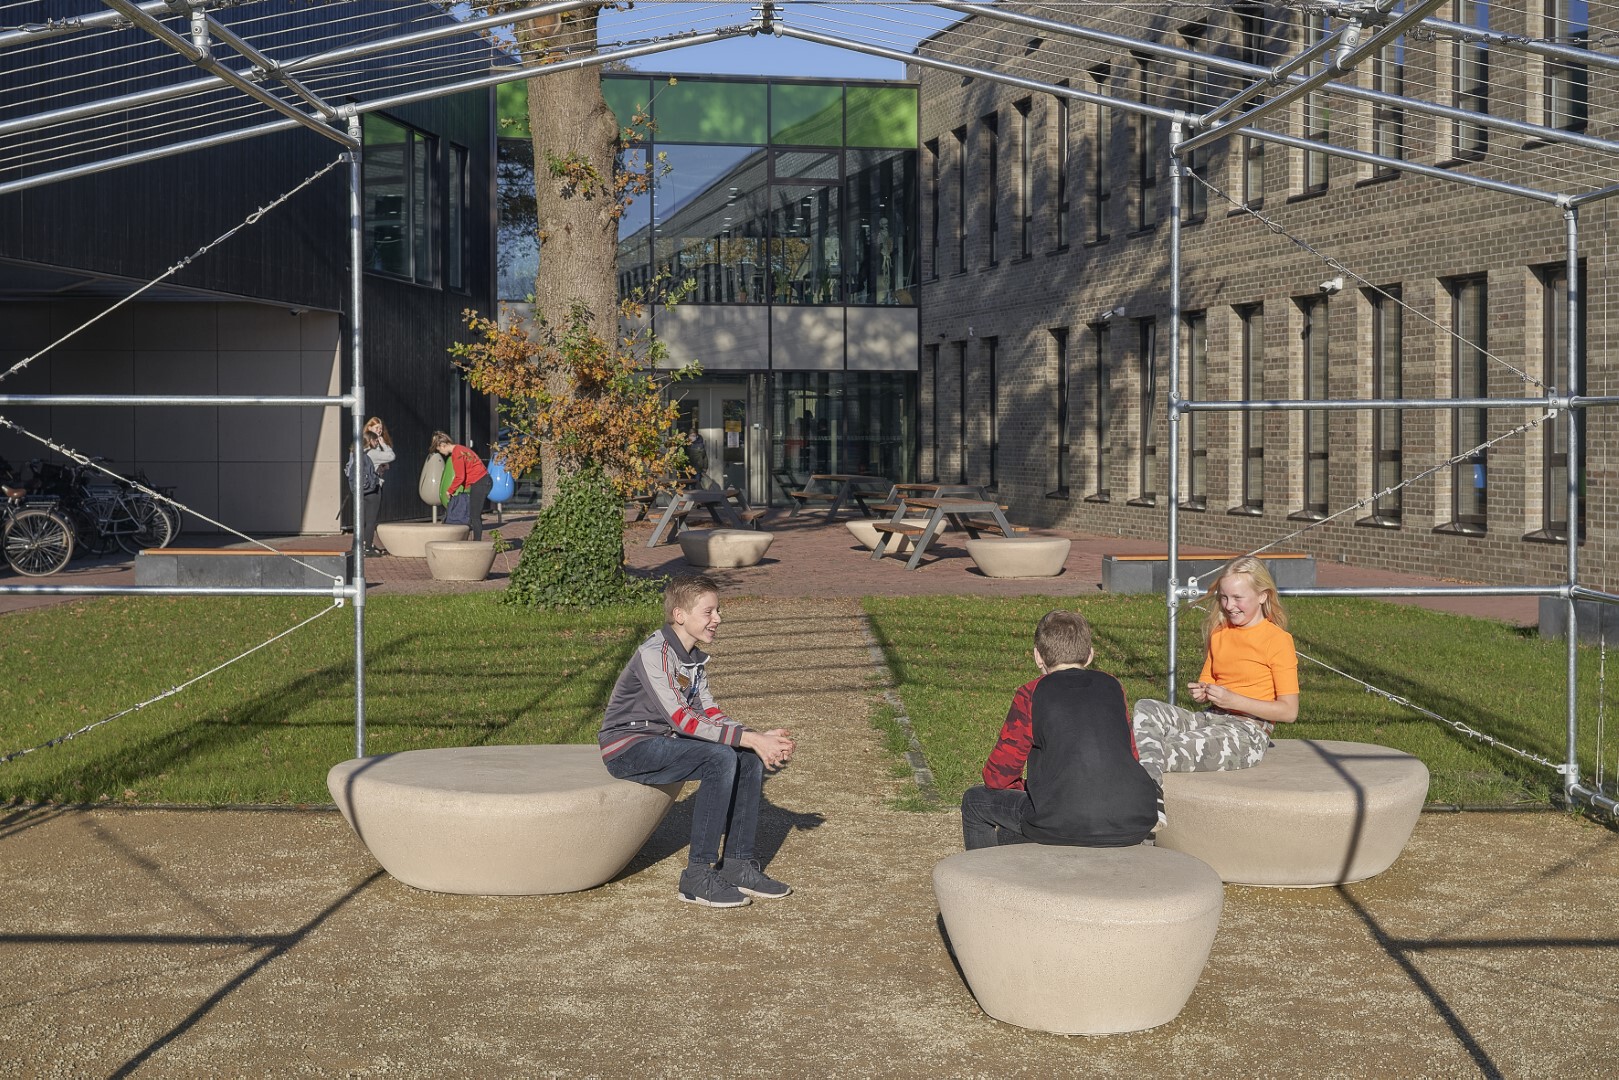 Meubilair met natuurlijke uitstraling voor groene school in Emmen